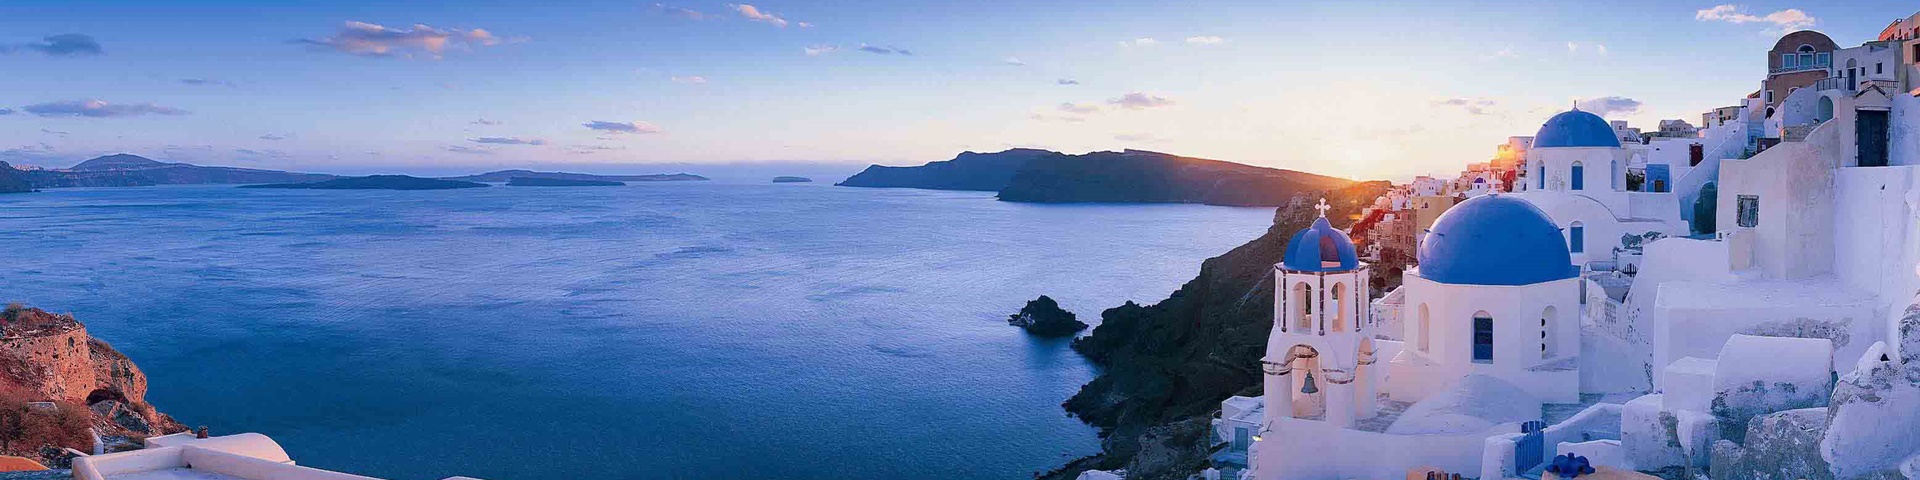 希臘邂逅愛琴海 天空之城跳島10 日 (米克諾斯 聖托里尼雙島)